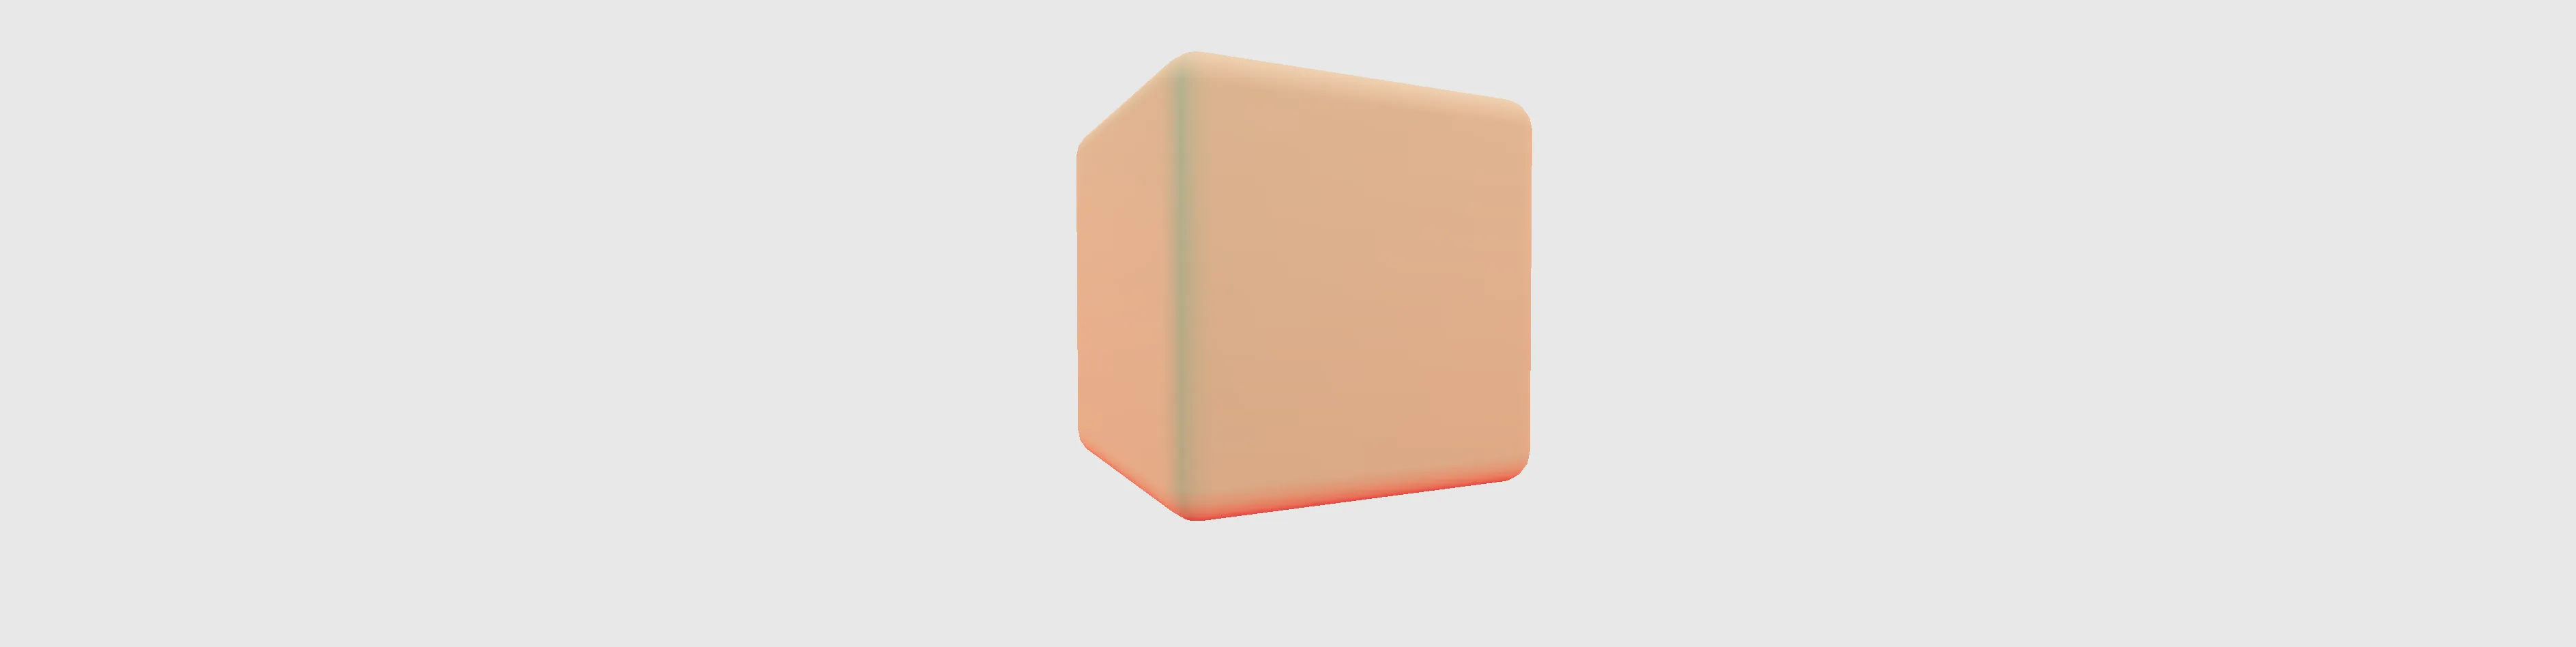 gamecube logo cube.fbx